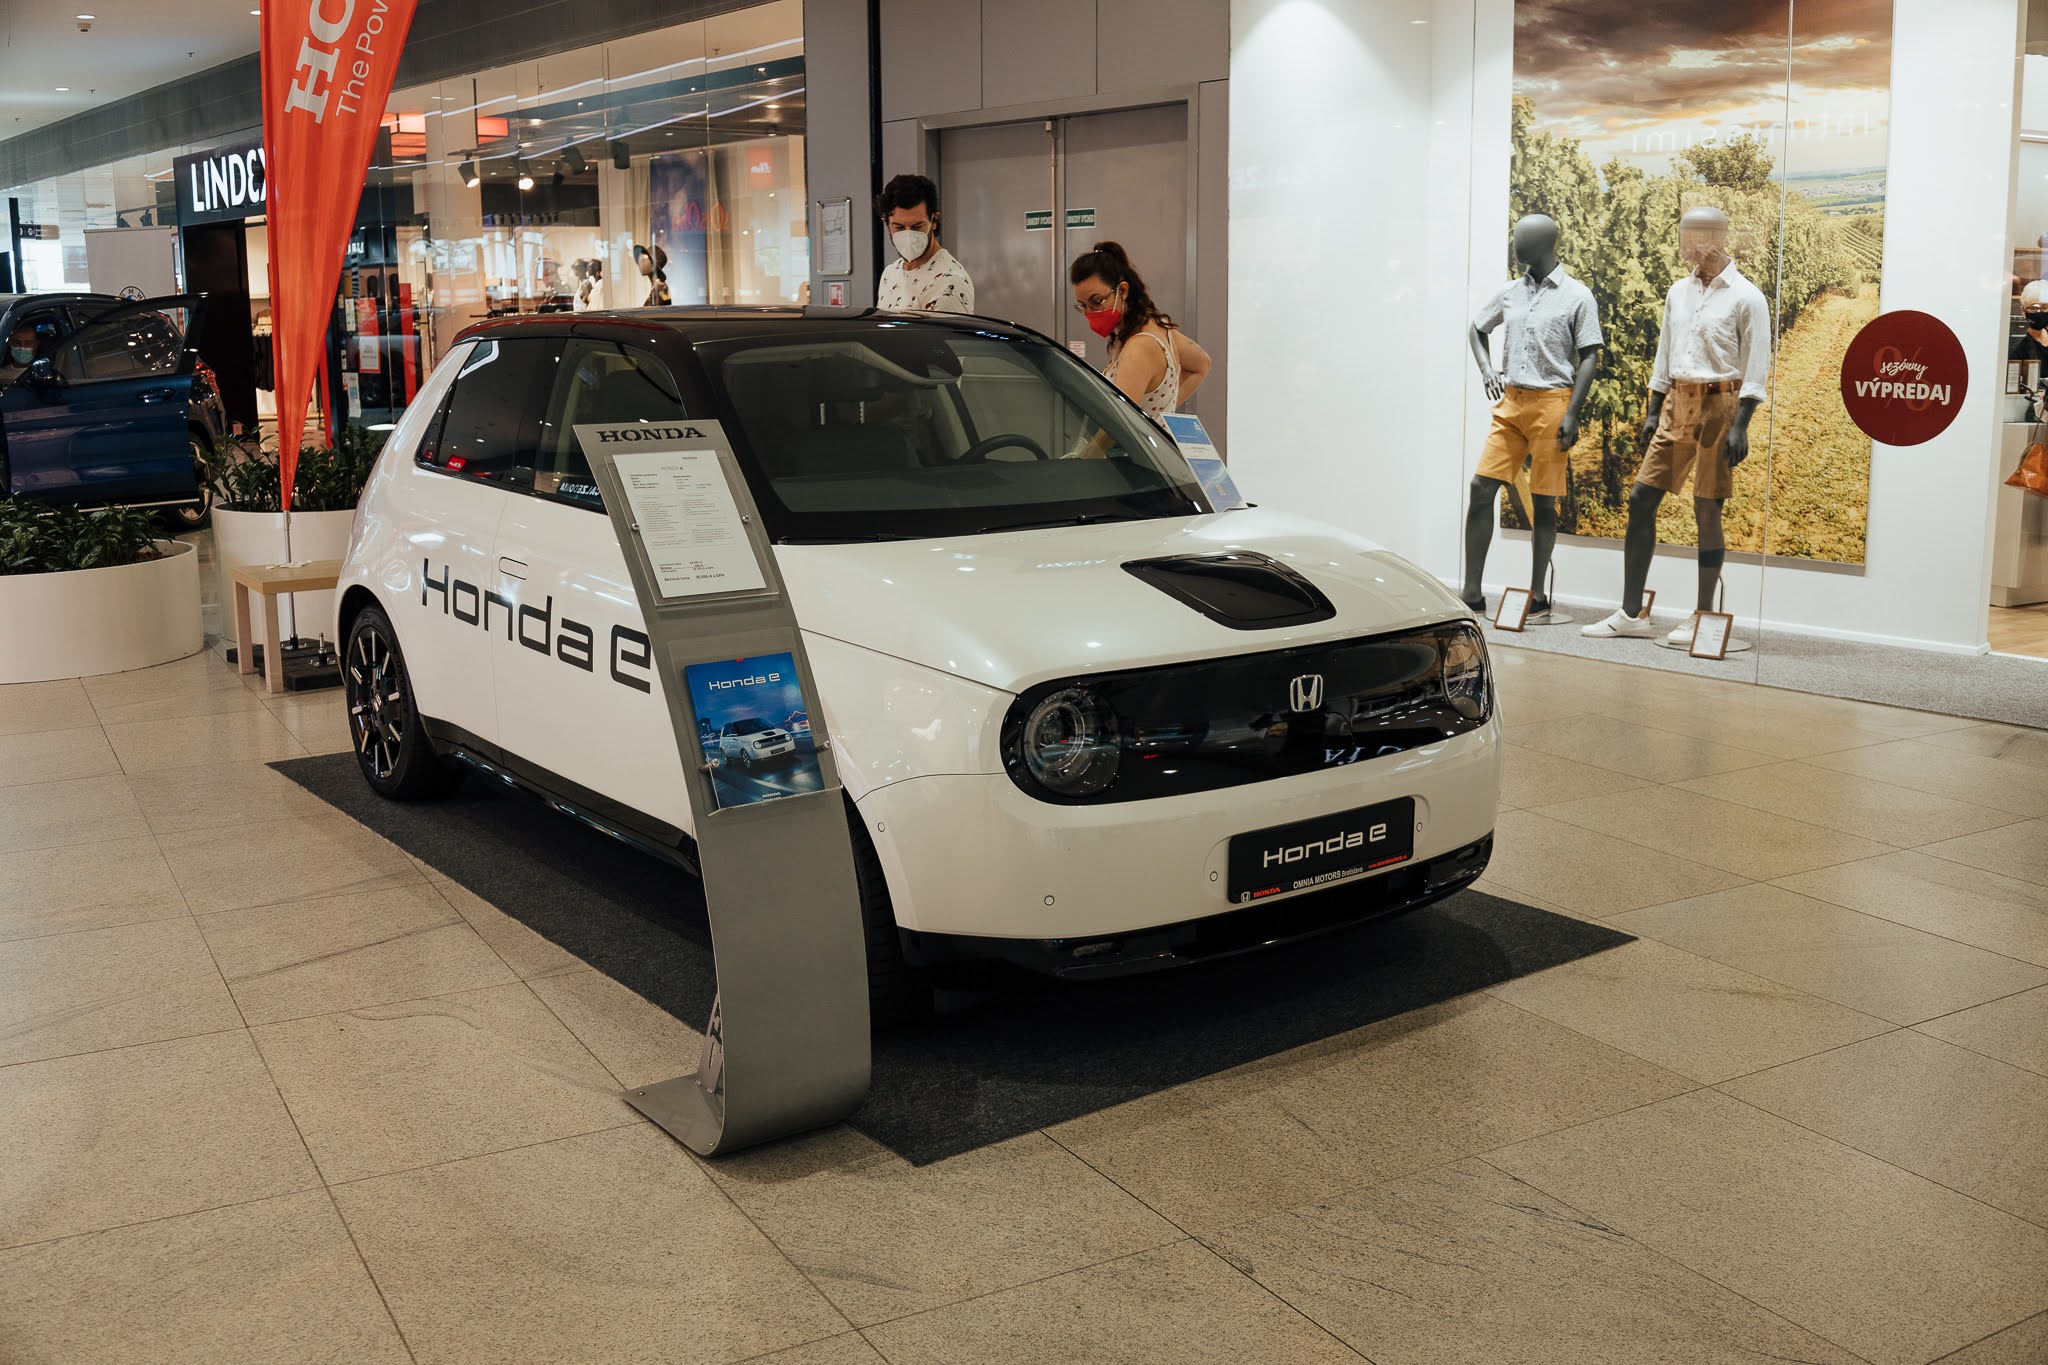 Salón elektromobilov 2021 potvrdil stále zvyšujúci sa záujem o elektromobilitu, návštevníci spravili viac ako 600 jázd